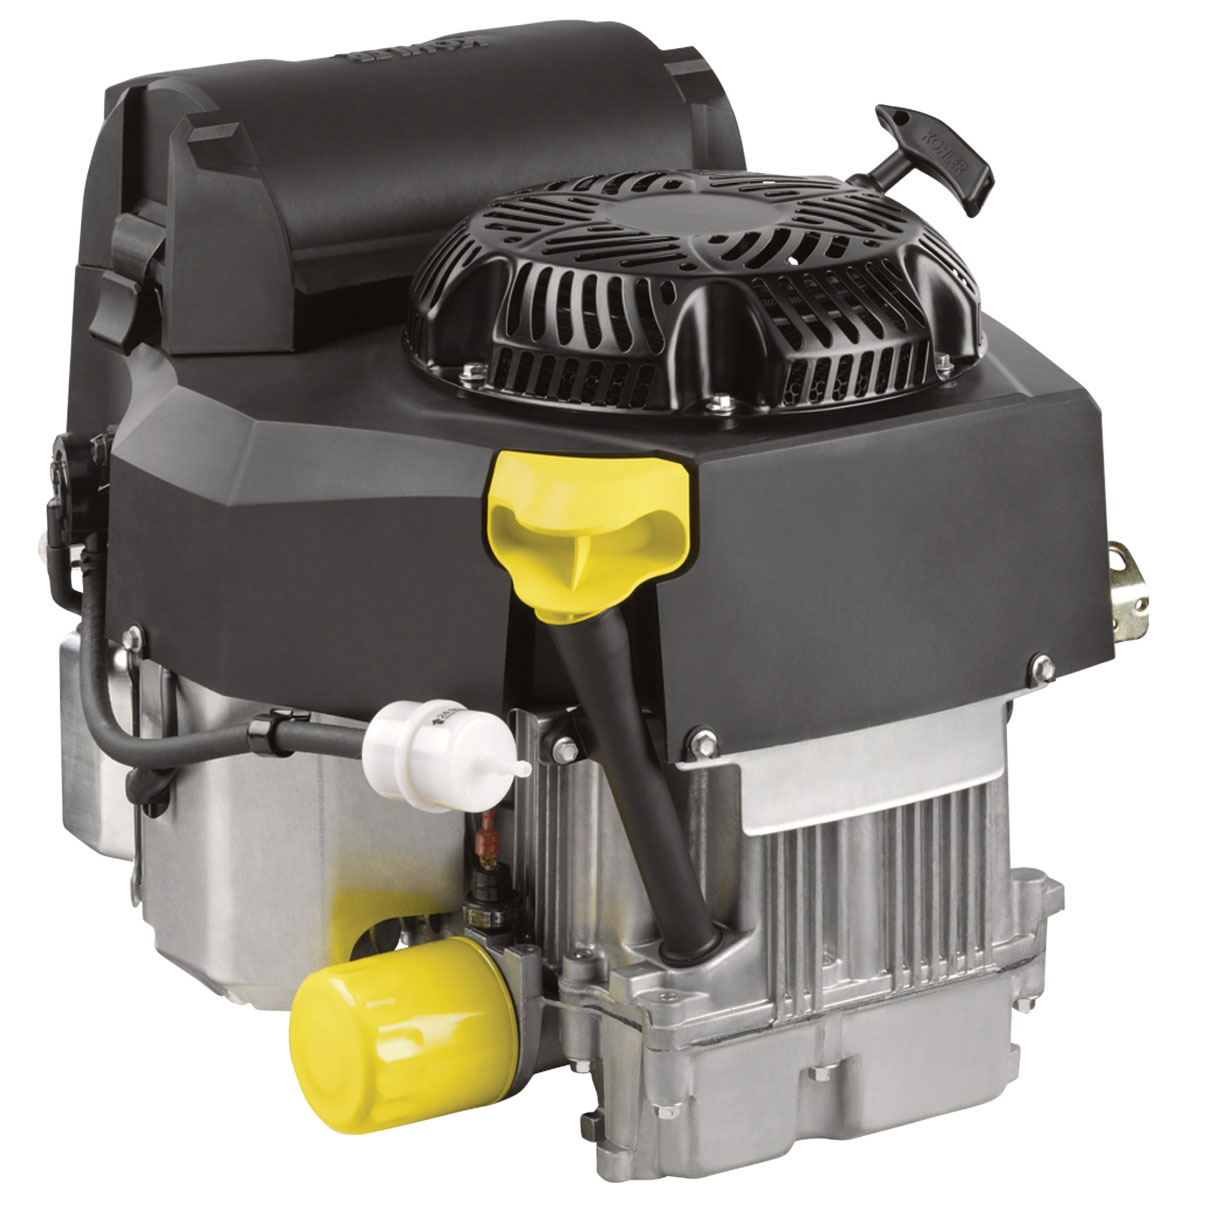 Kohler PA-ZT720-3017 Kohler Confidant Vertical Engine — 720cc  PA-ZT720-3028